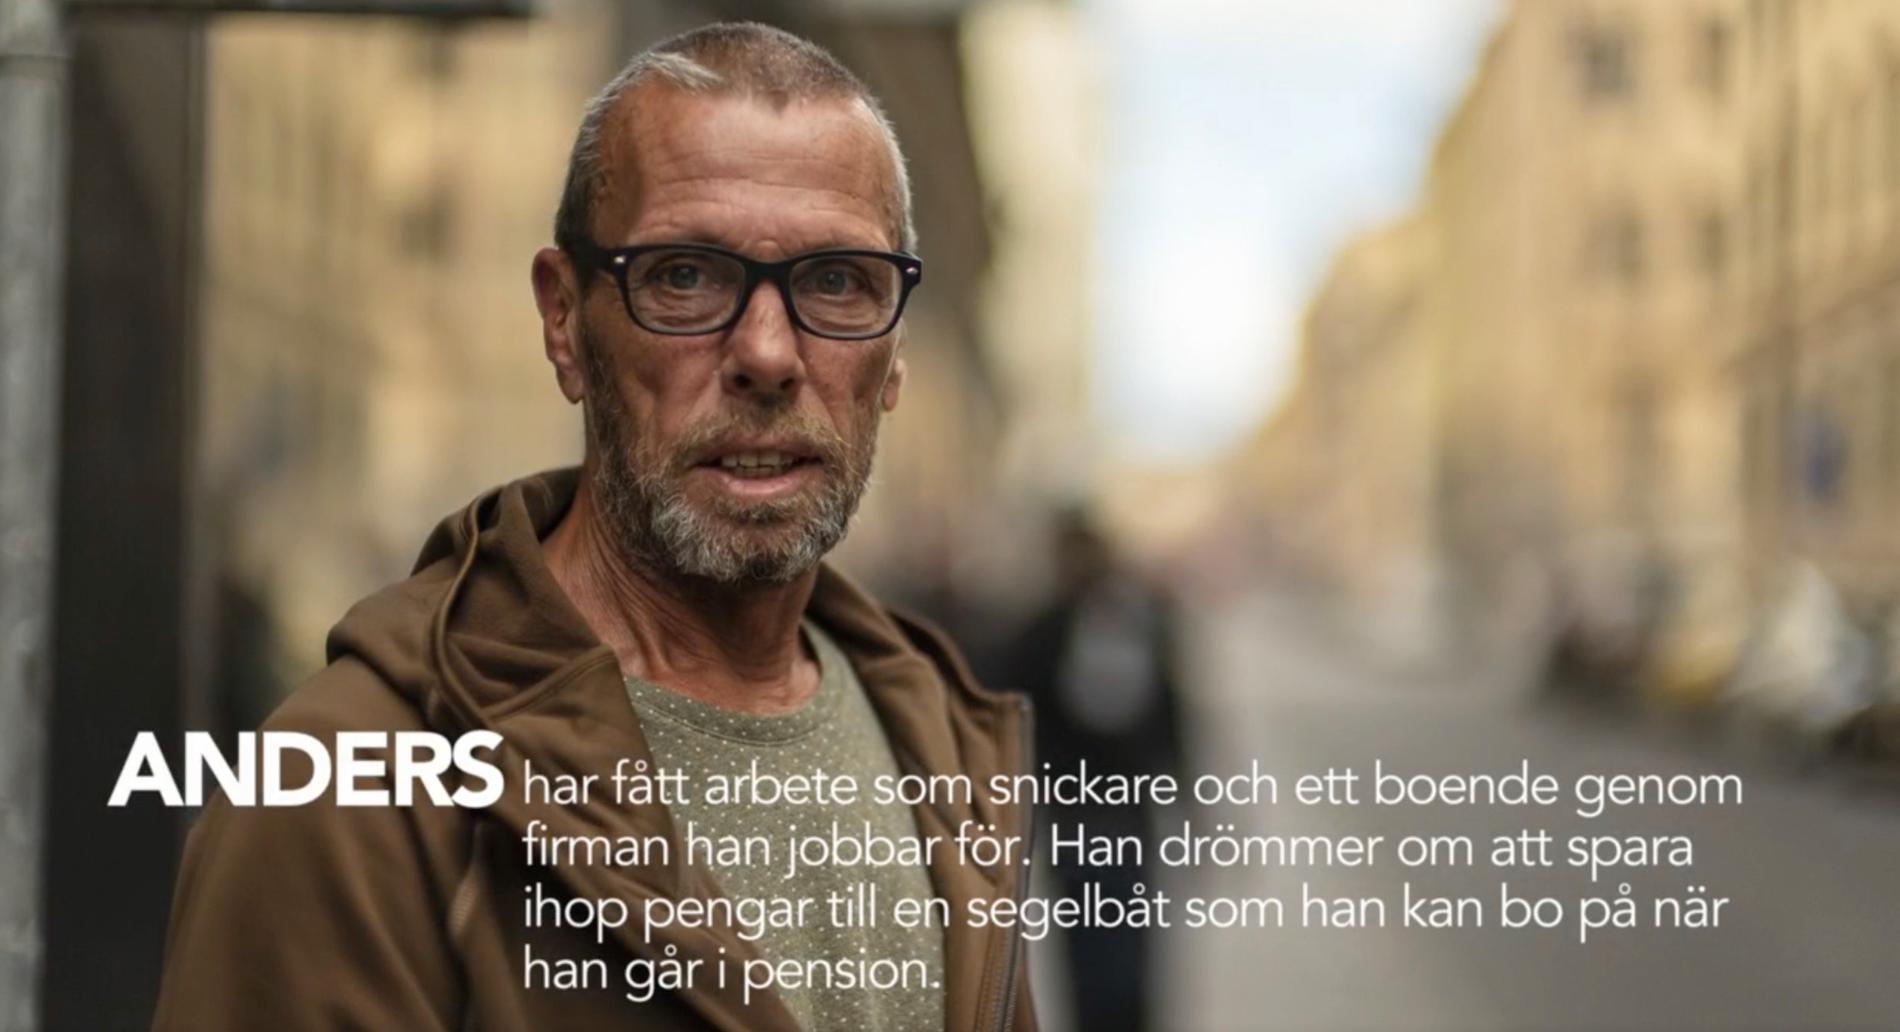 SVT:s serie ”36 dagar på gatan” slutar med Anders dröm om att spara ihop till en segelbåt. Nu har han fått en segelbåt av en familj i Skåne.